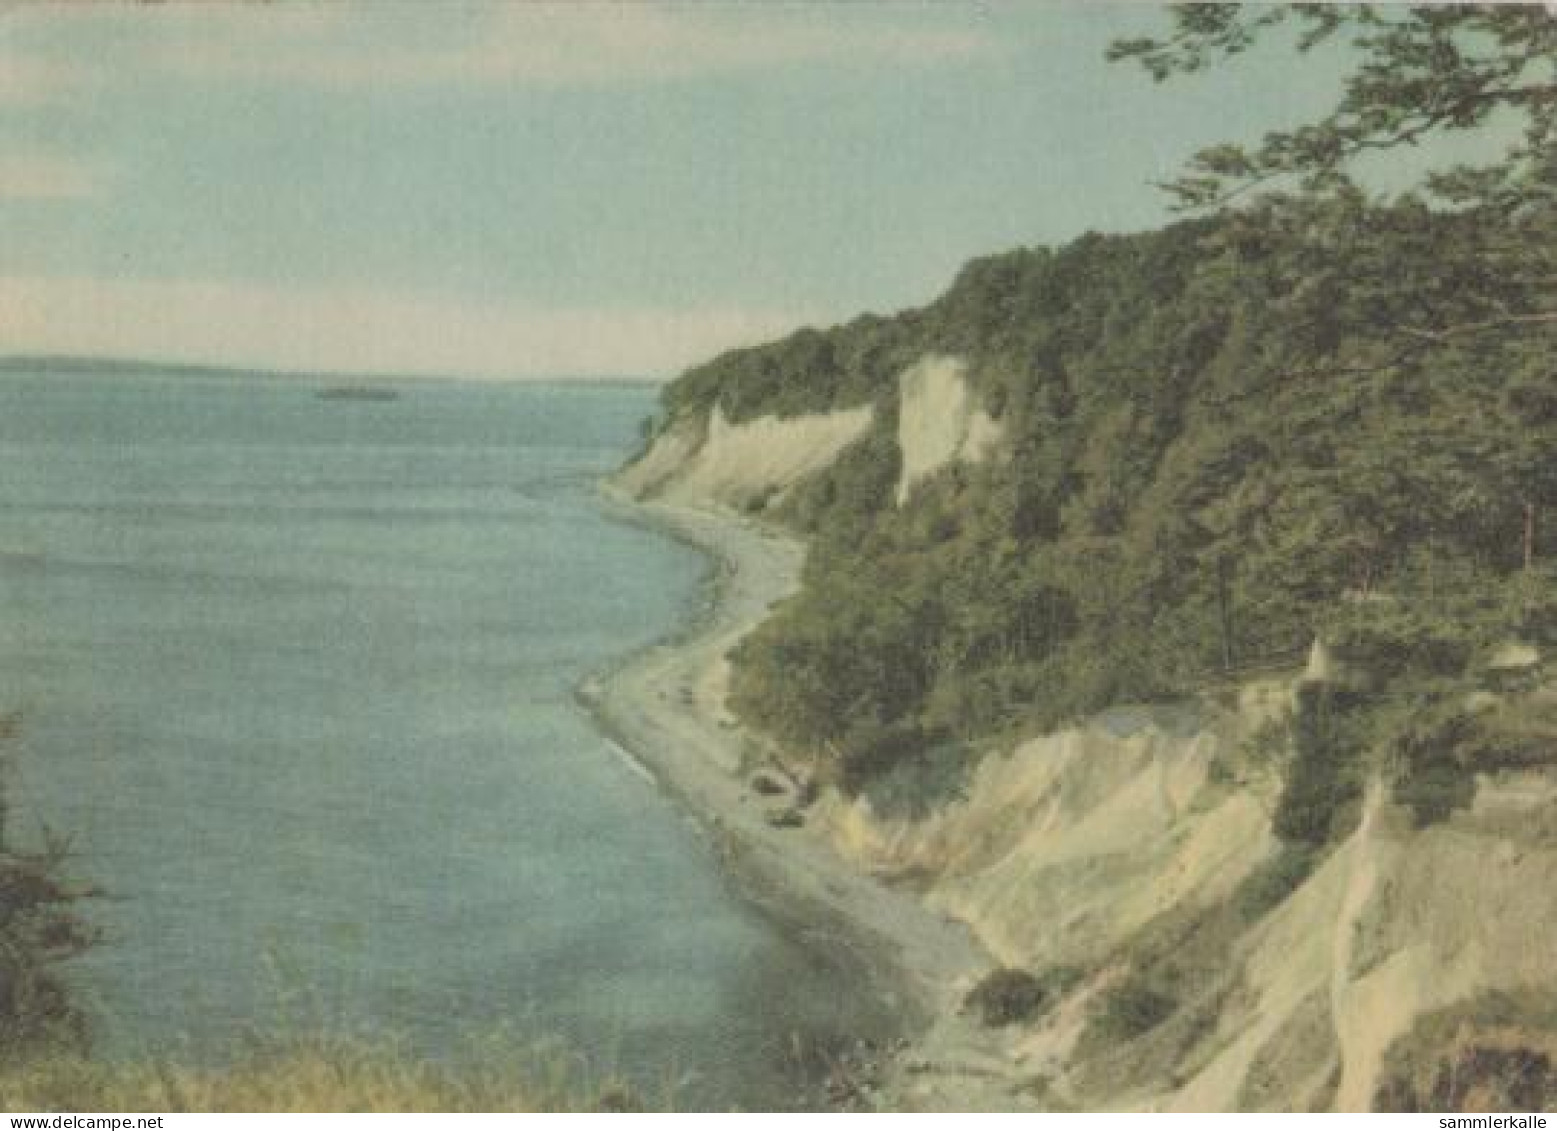 19109 - Binz - Kreideküste Bei Sassnitz Auf Rügen - Ca. 1965 - Ruegen